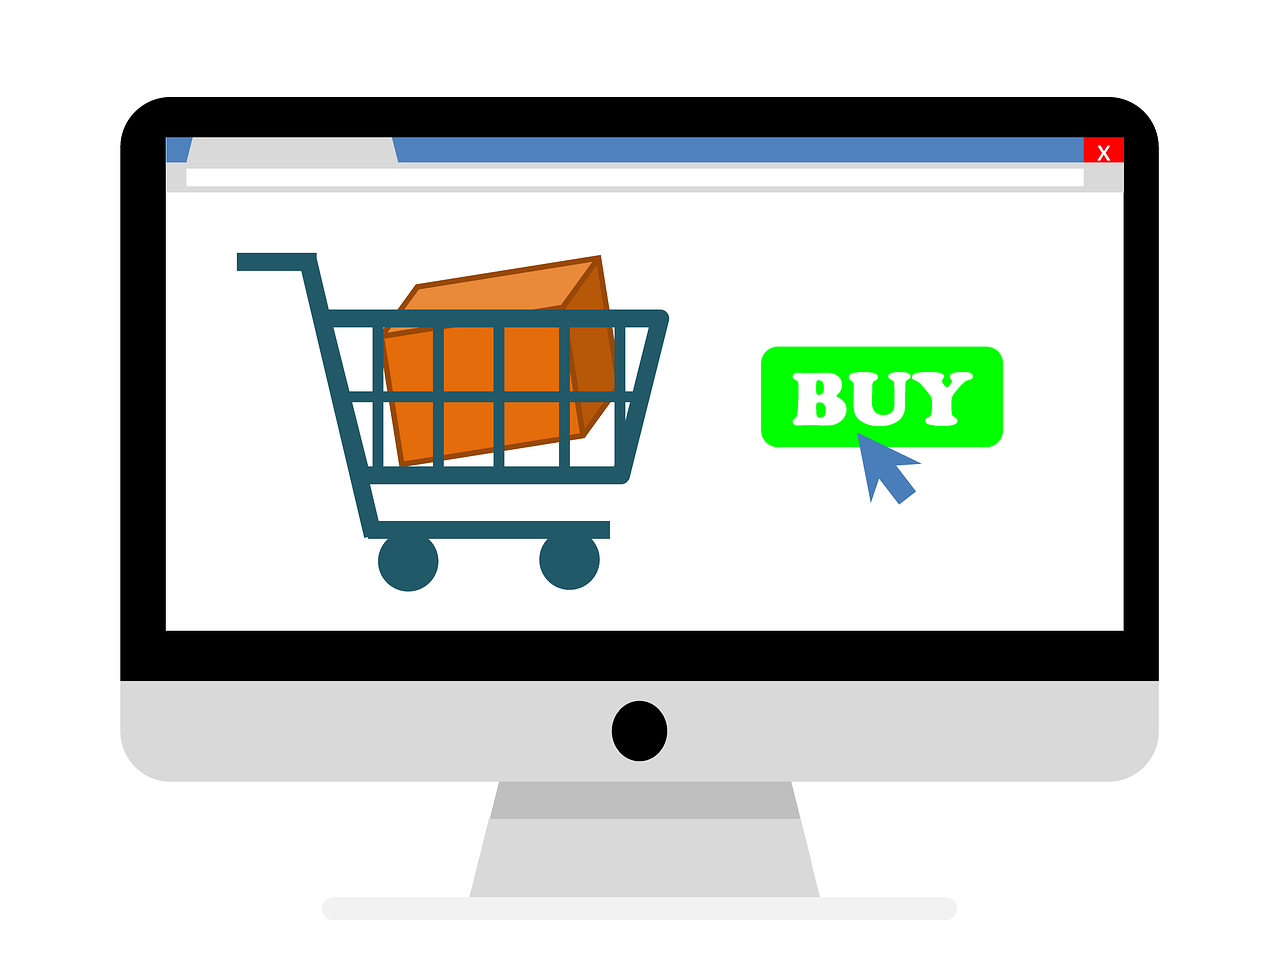 Kjøp i nettbutikk er et naturlig mål for en appellativ tekst.